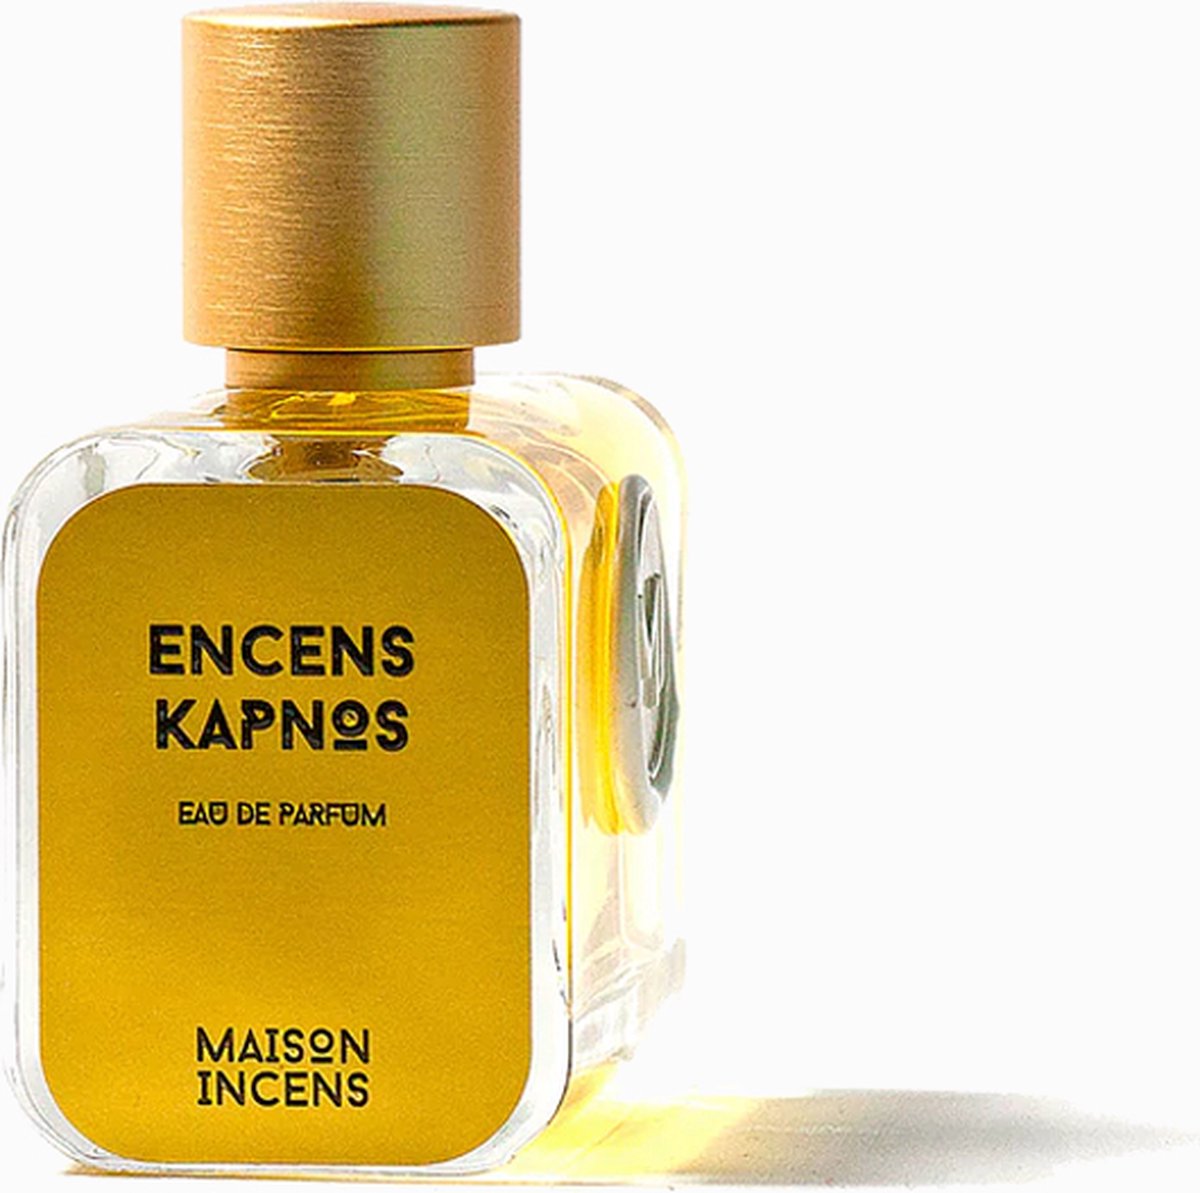 Encens Kapnos Eau de Parfum